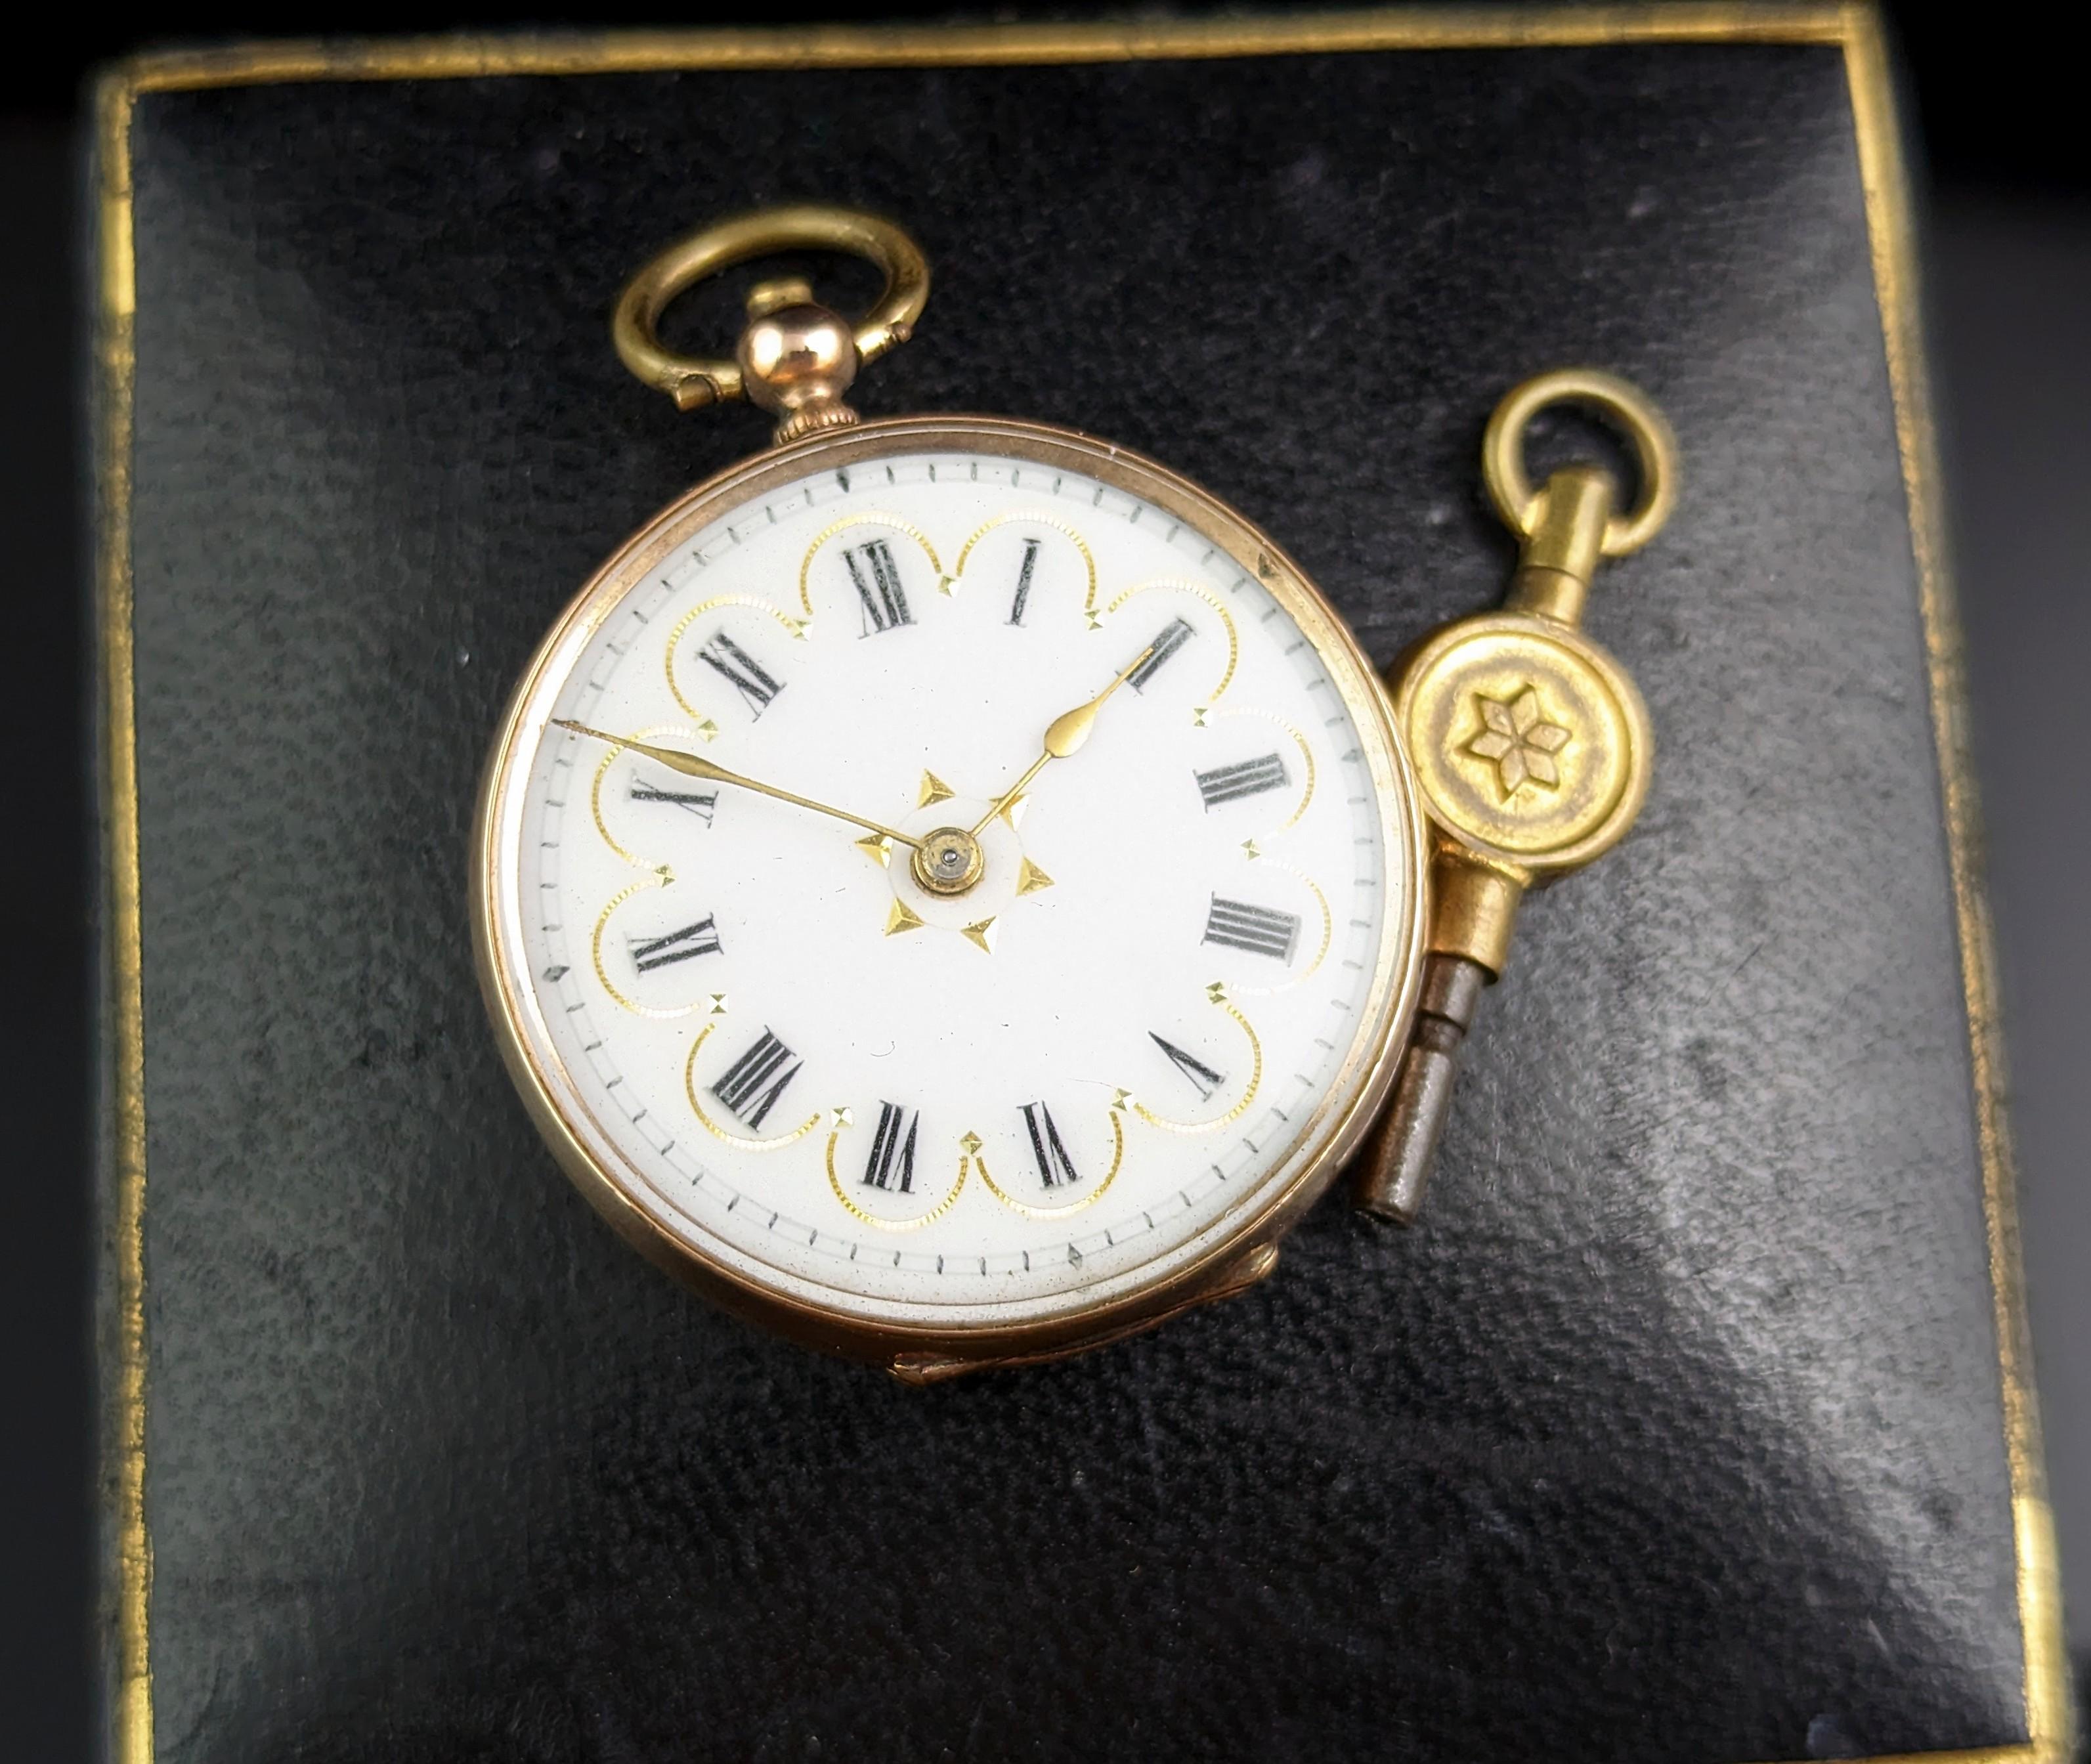 Diese antike Damenuhr mit Anhänger aus 9 Karat Gold ist die perfekte Kombination aus Stil und Funktionalität.

Die Taschenuhr ist aufwendig gestaltet mit floralen Gravuren auf der Rückseite mit einem weißen Emaille-Zifferblatt, goldfarbenen Zeigern